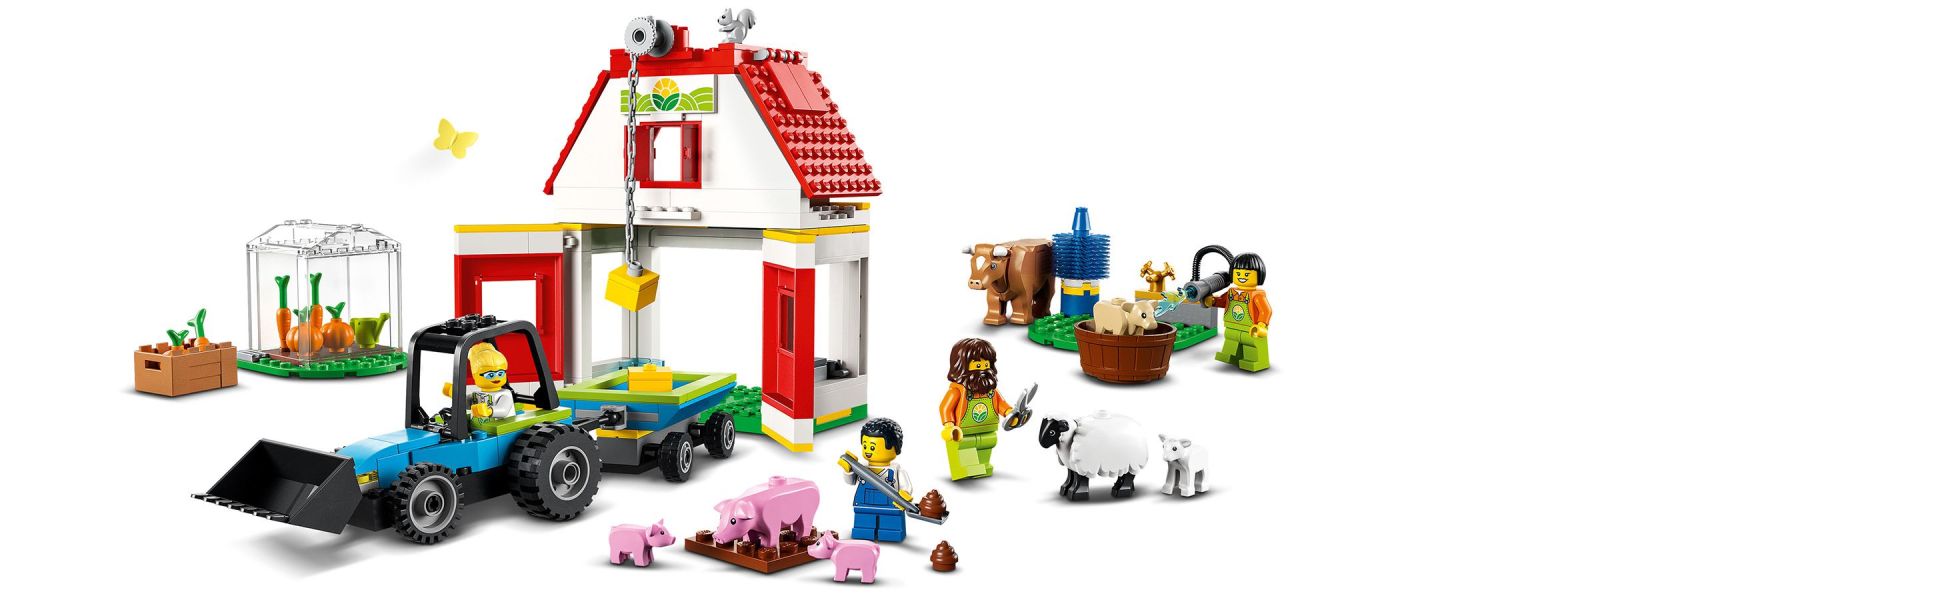 LEGO tbd City Farm 60346 - Walmart.com